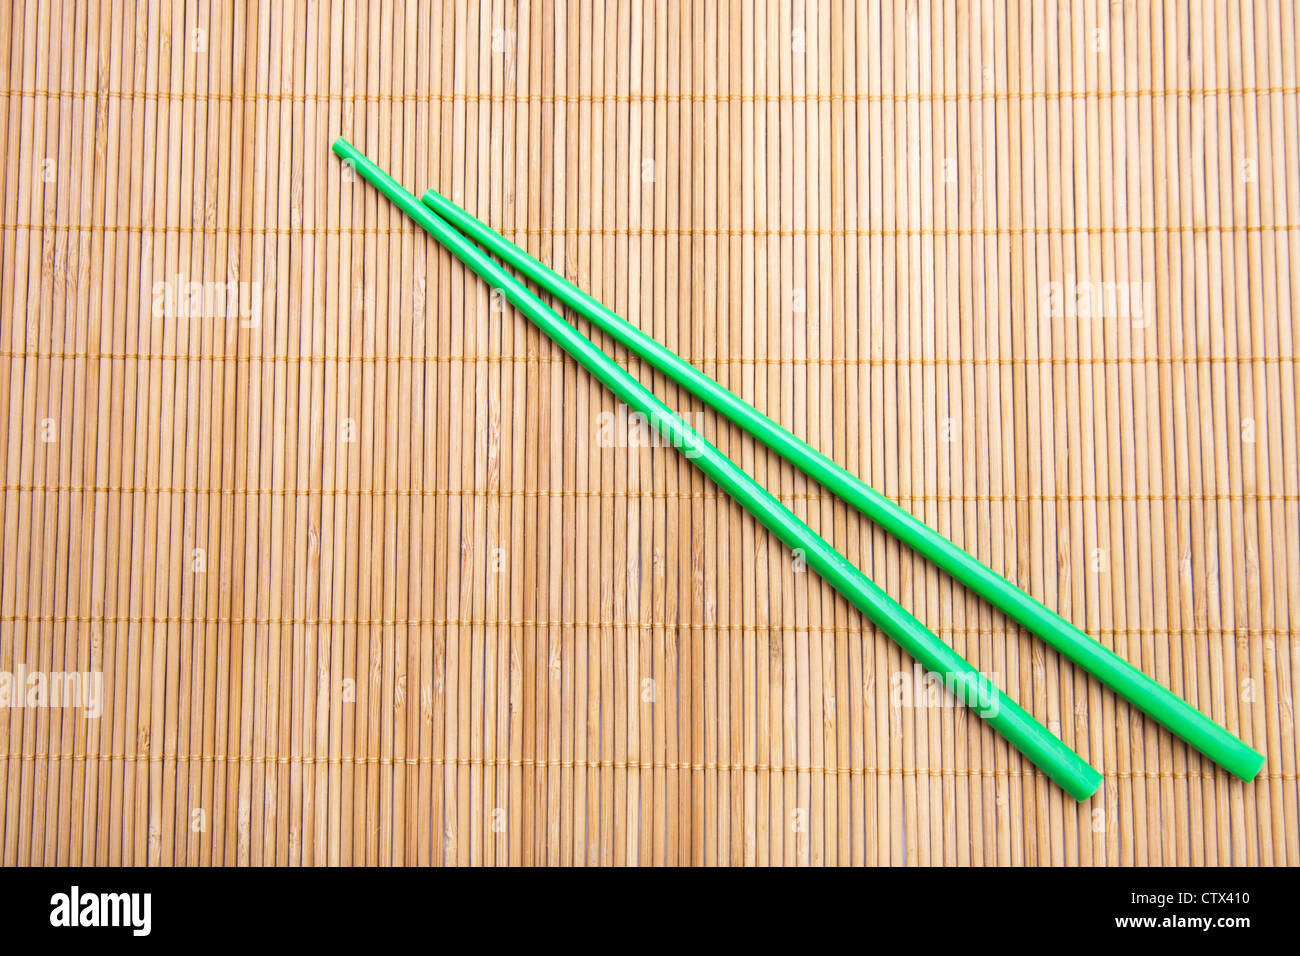 Green chopsticks on bamboo mat. Stock Photo